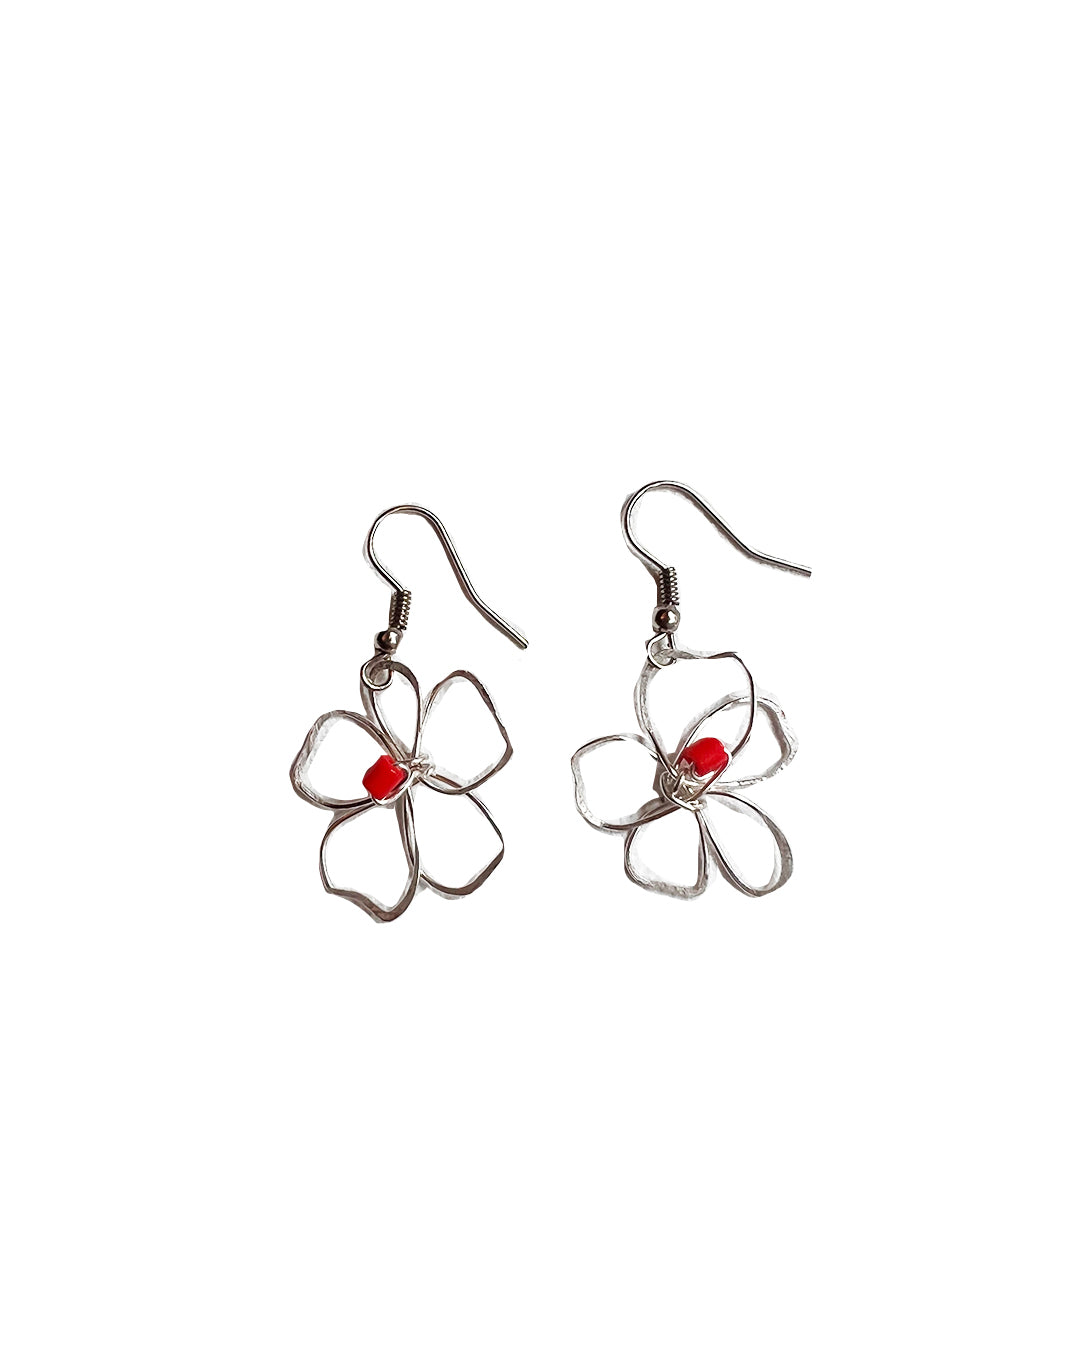 silver flower earrings handmade glass beads